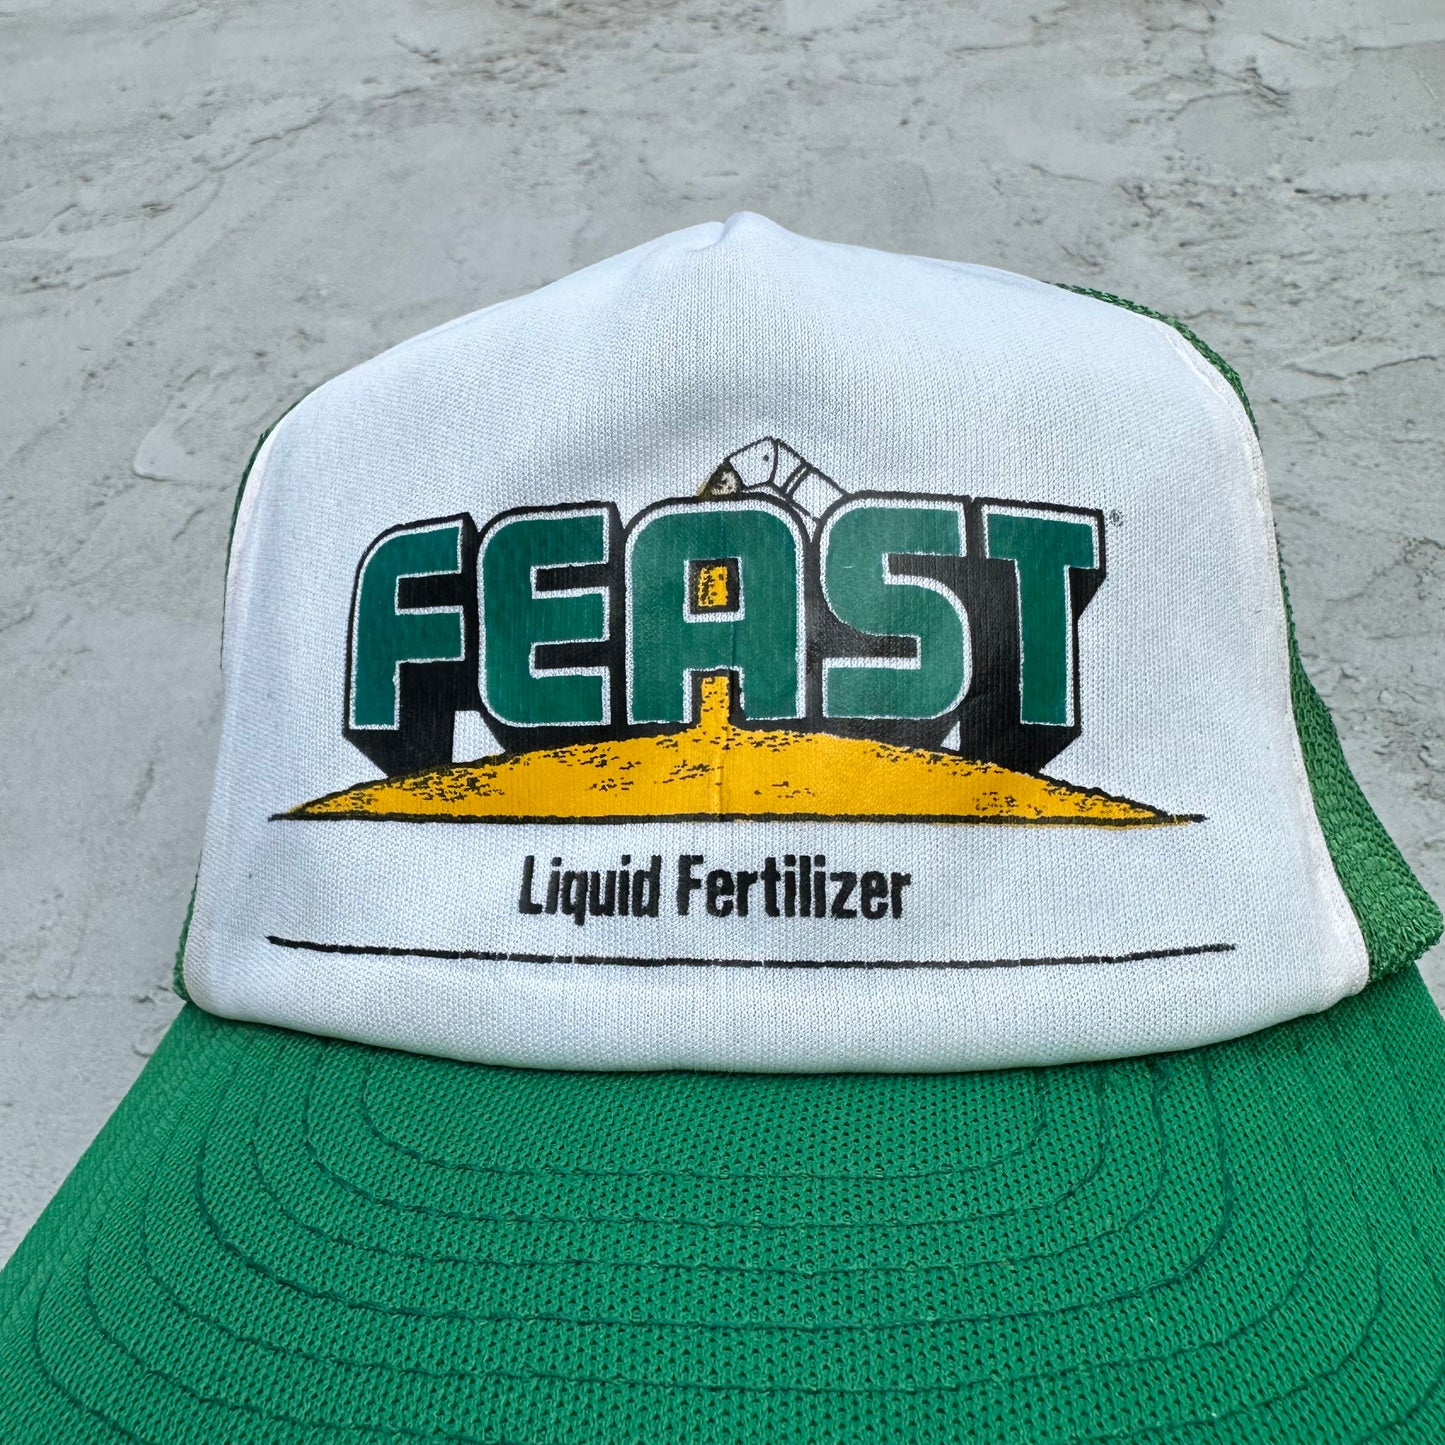 Vintage Feast Liquid Fertilizer Mesh Hat